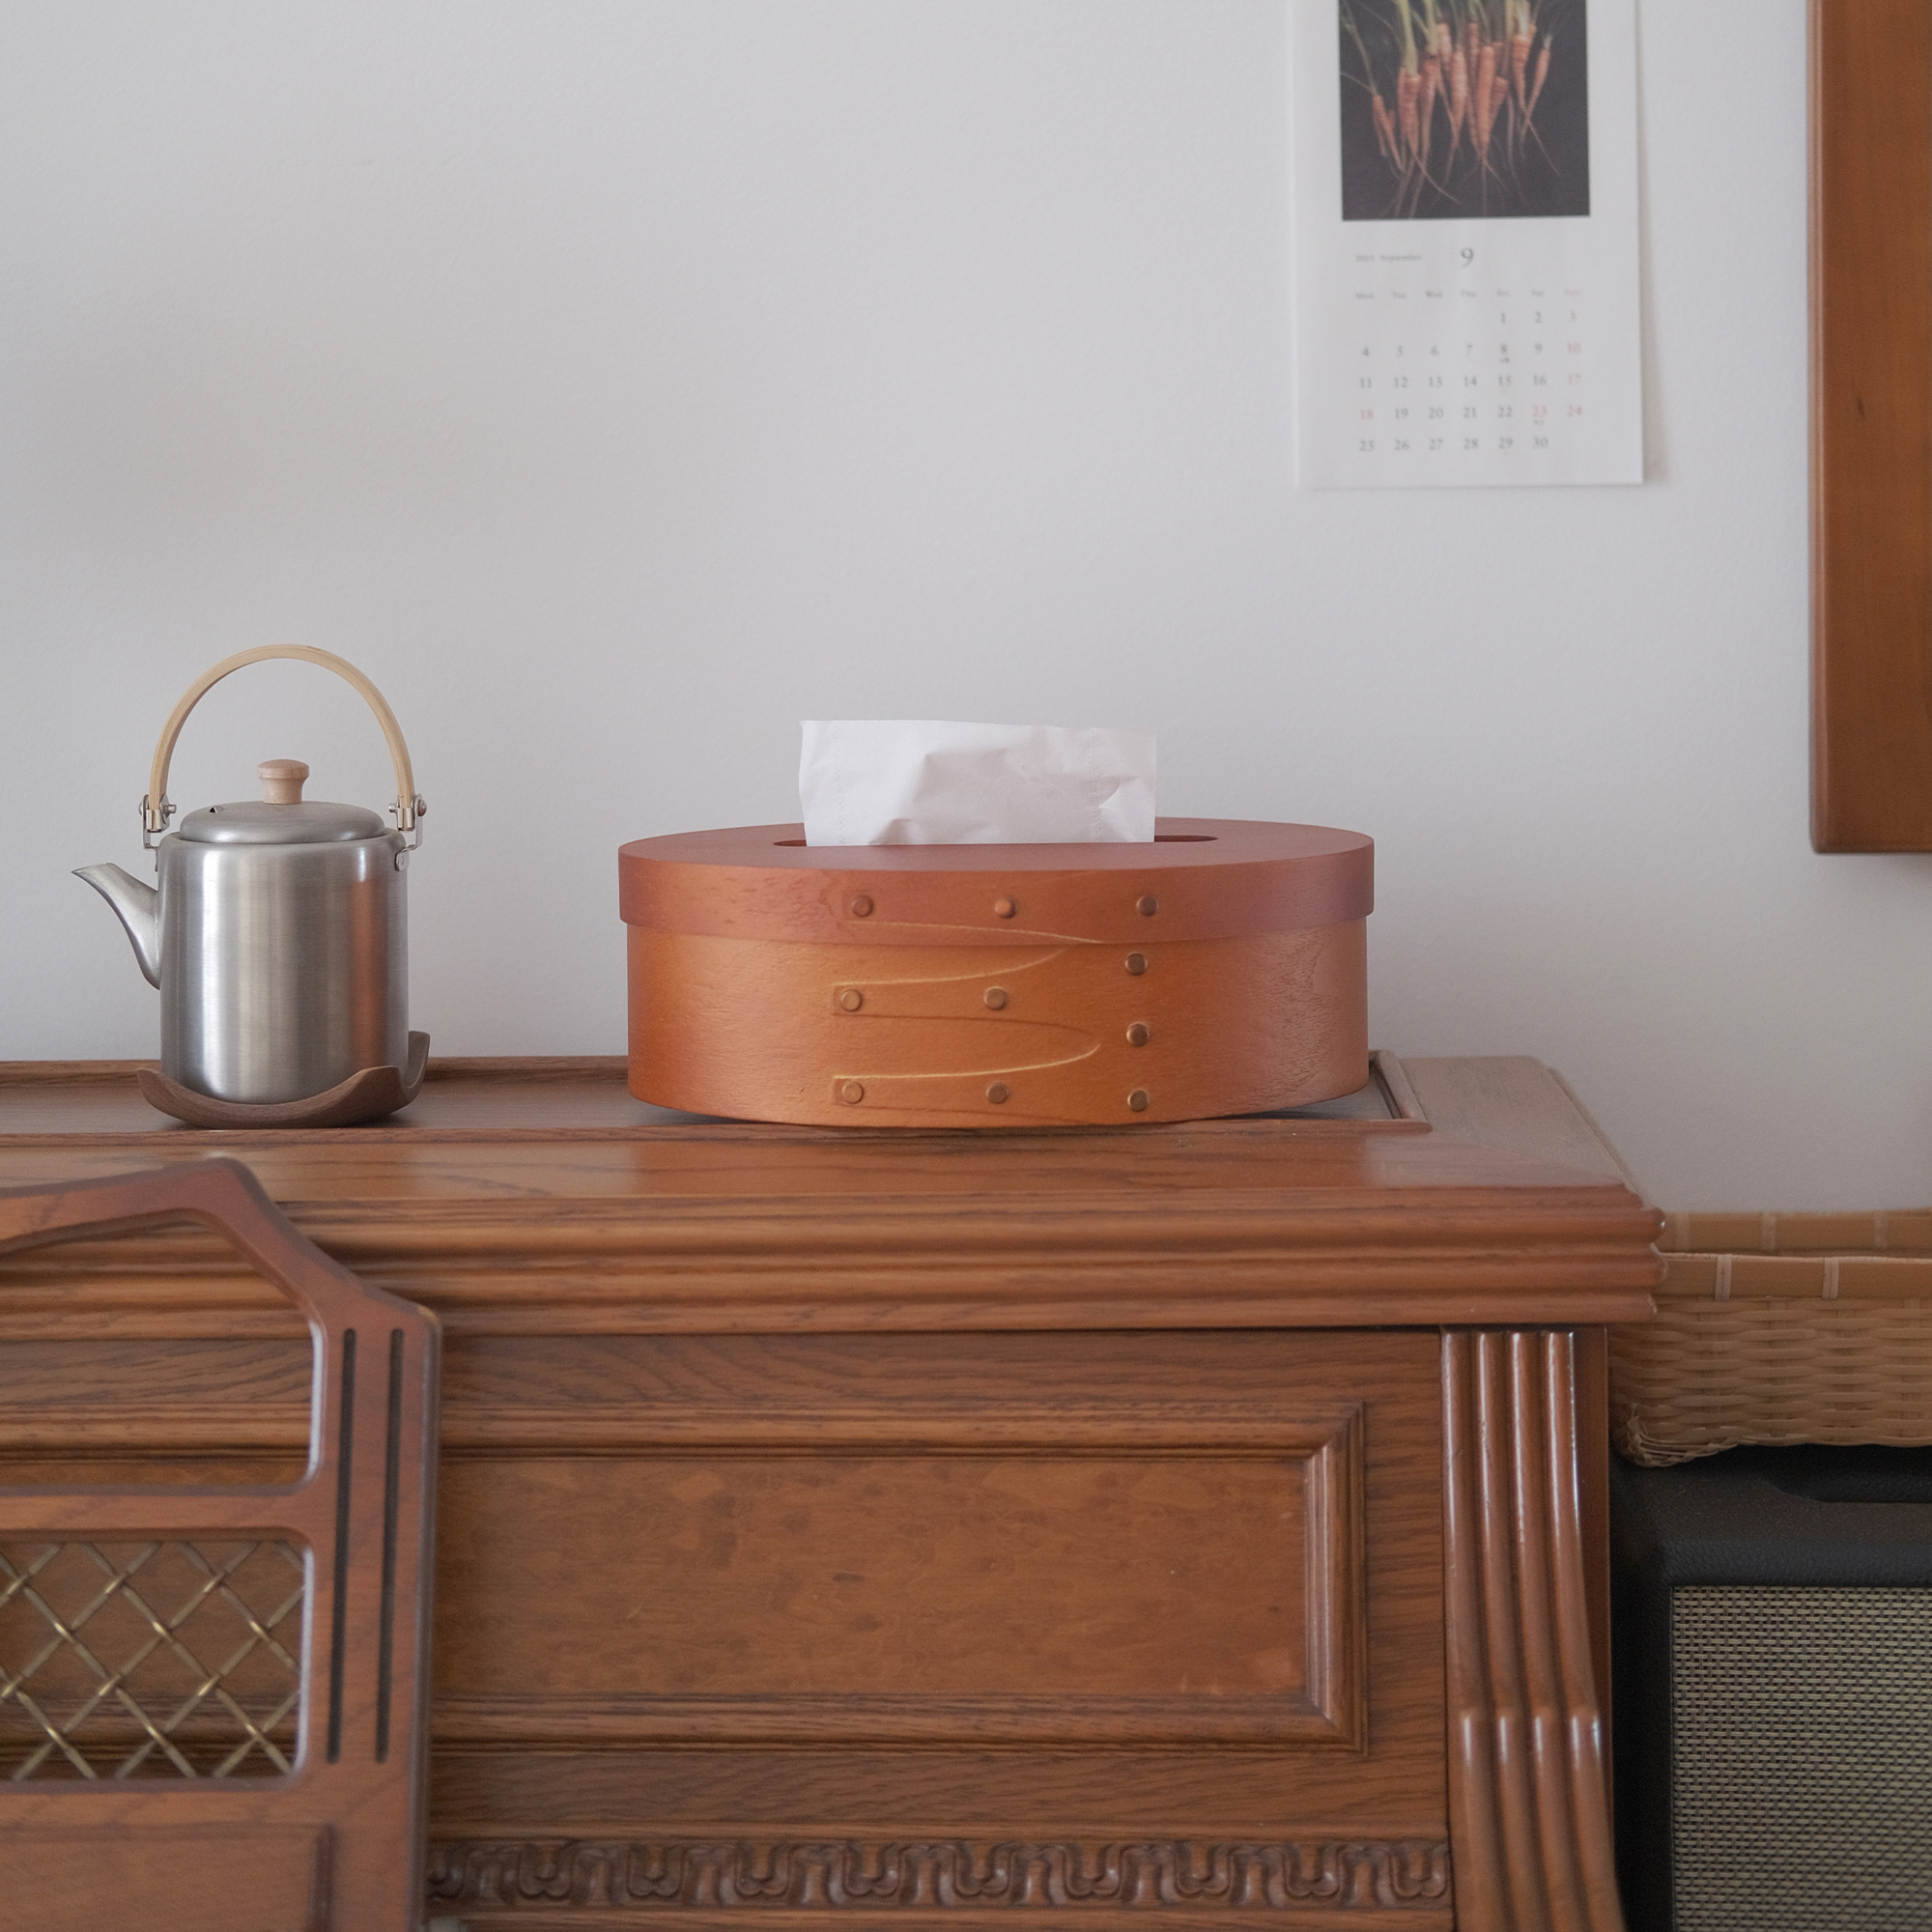 加安加丽中古手工木质夏克盒法式复古家用纸巾盒抽纸盒小众收纳盒